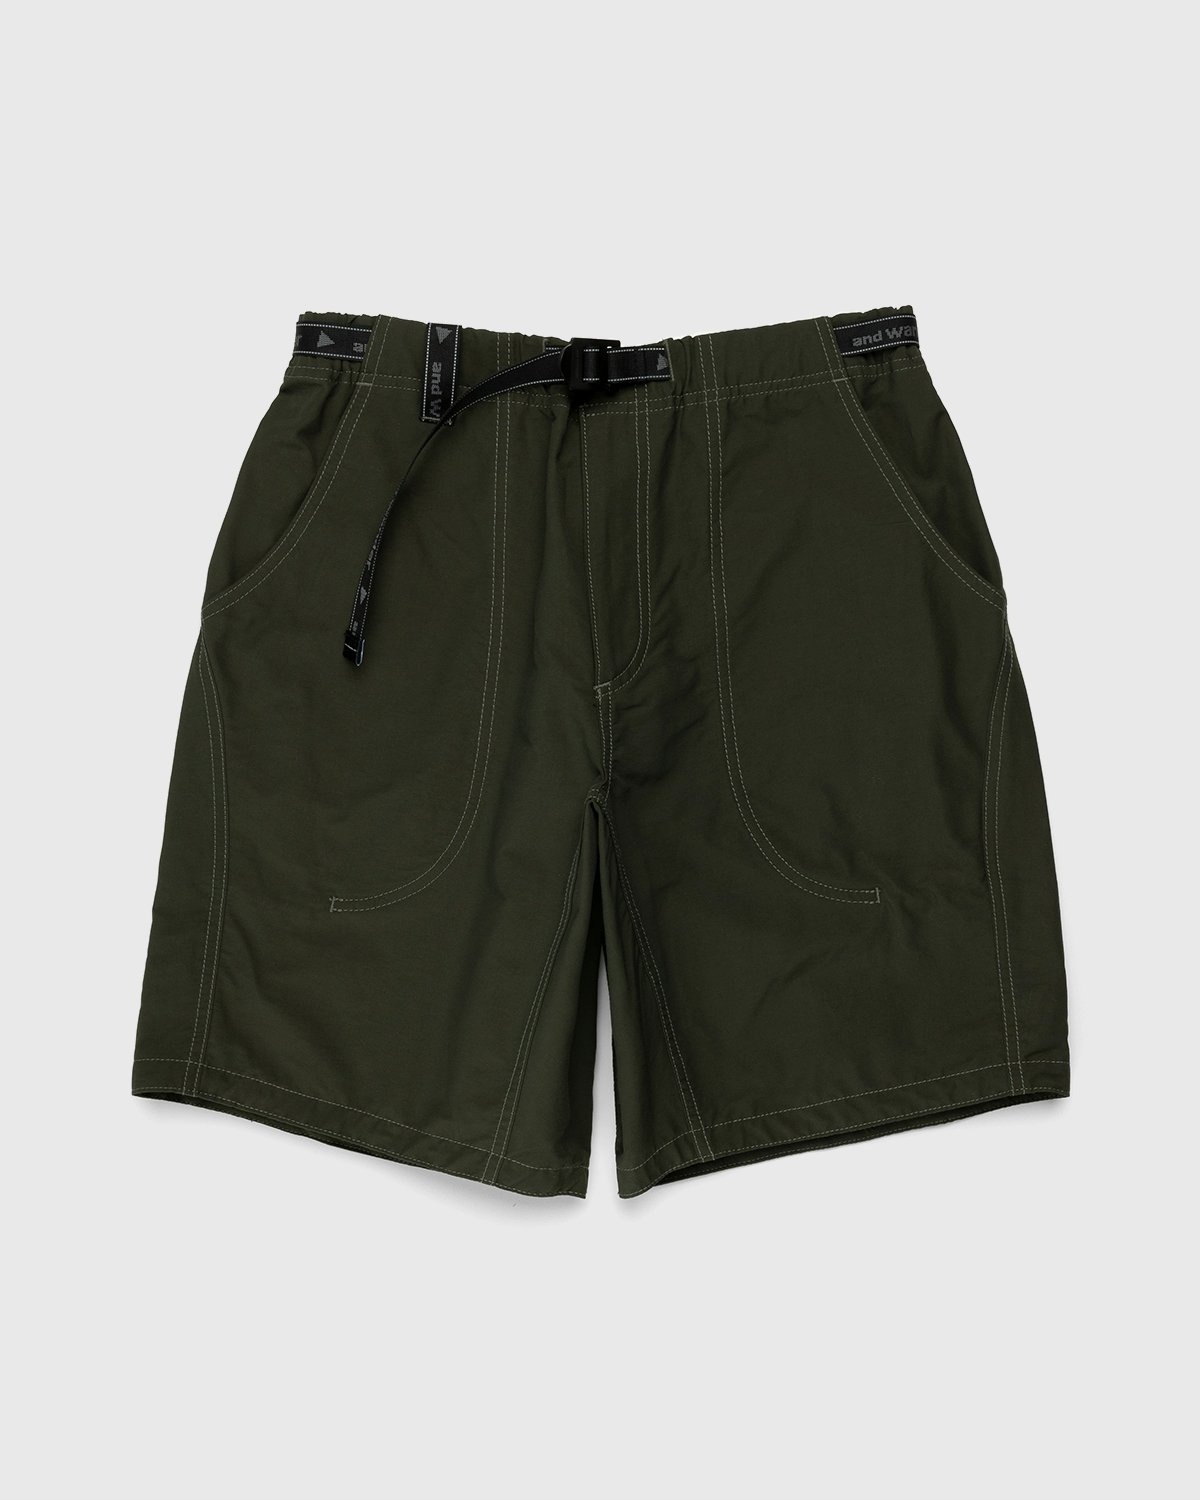 And Wander – 60/40 Cloth Shorts Khaki - Active Shorts - Green - Image 1